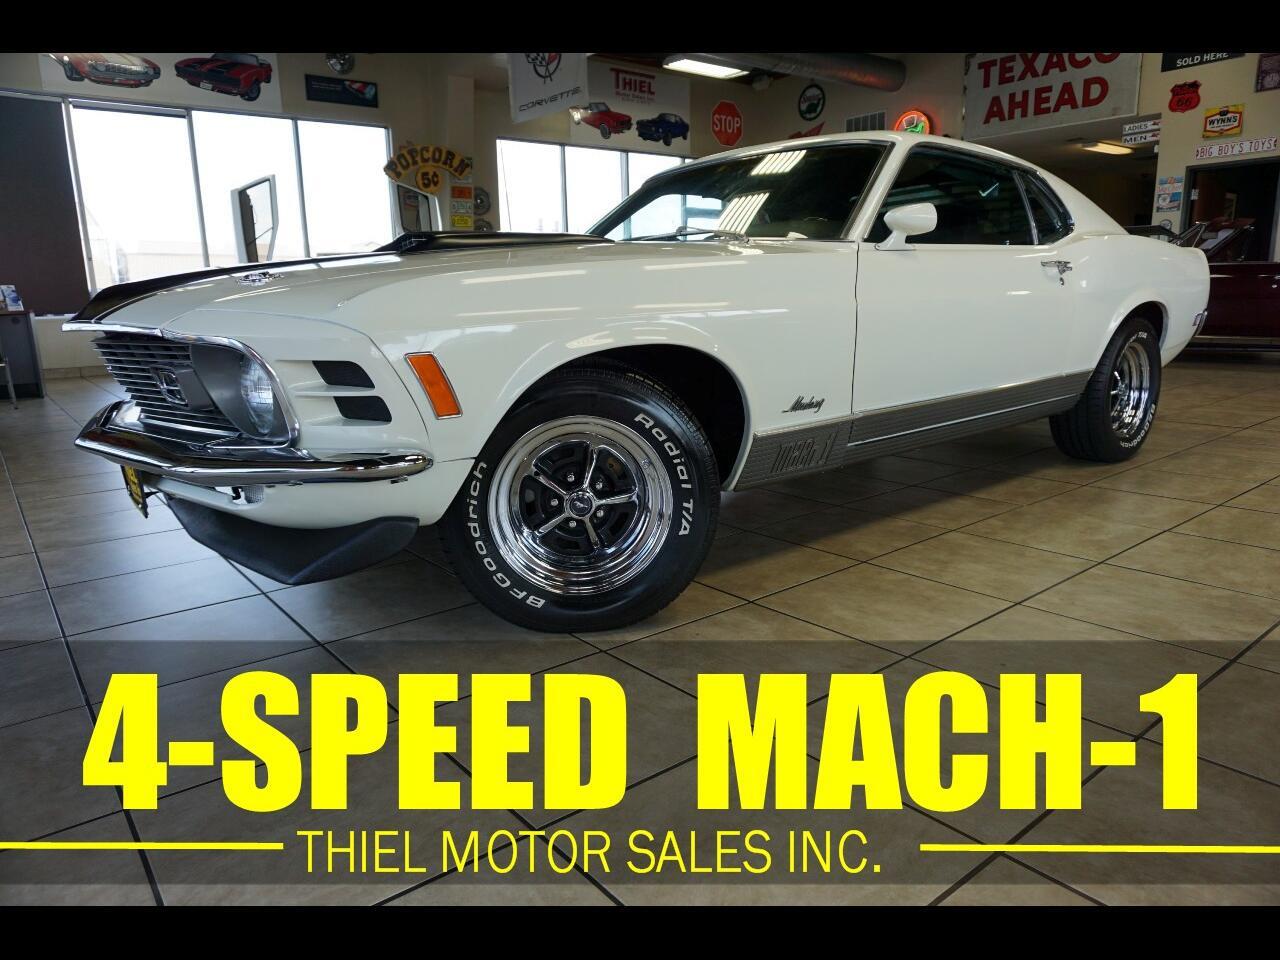 For Sale: 1970 Ford Mustang in De Witt, Iowa for sale in De Witt, IA